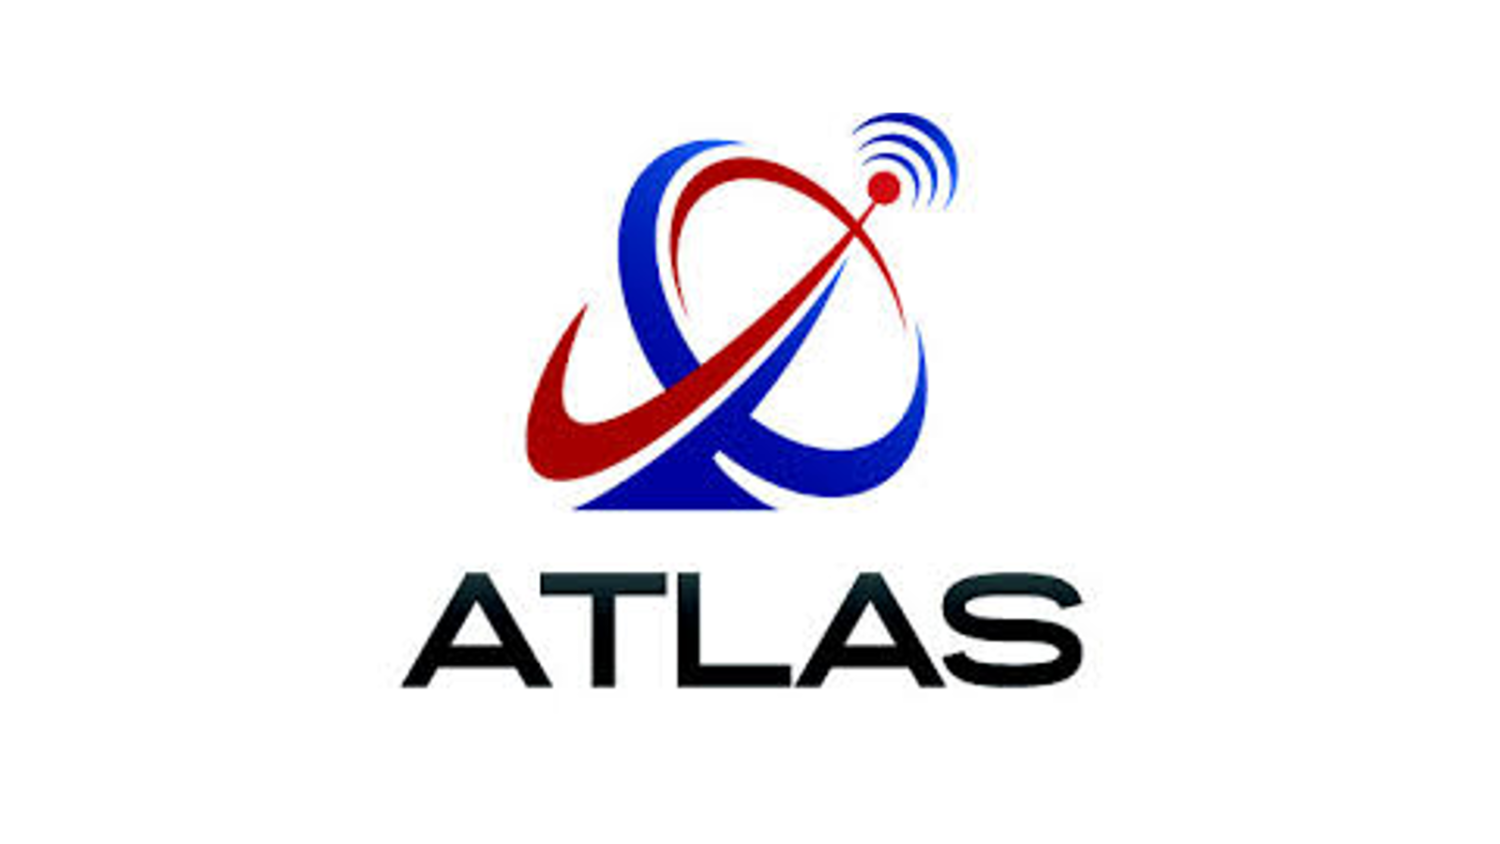 ATLAS company logo